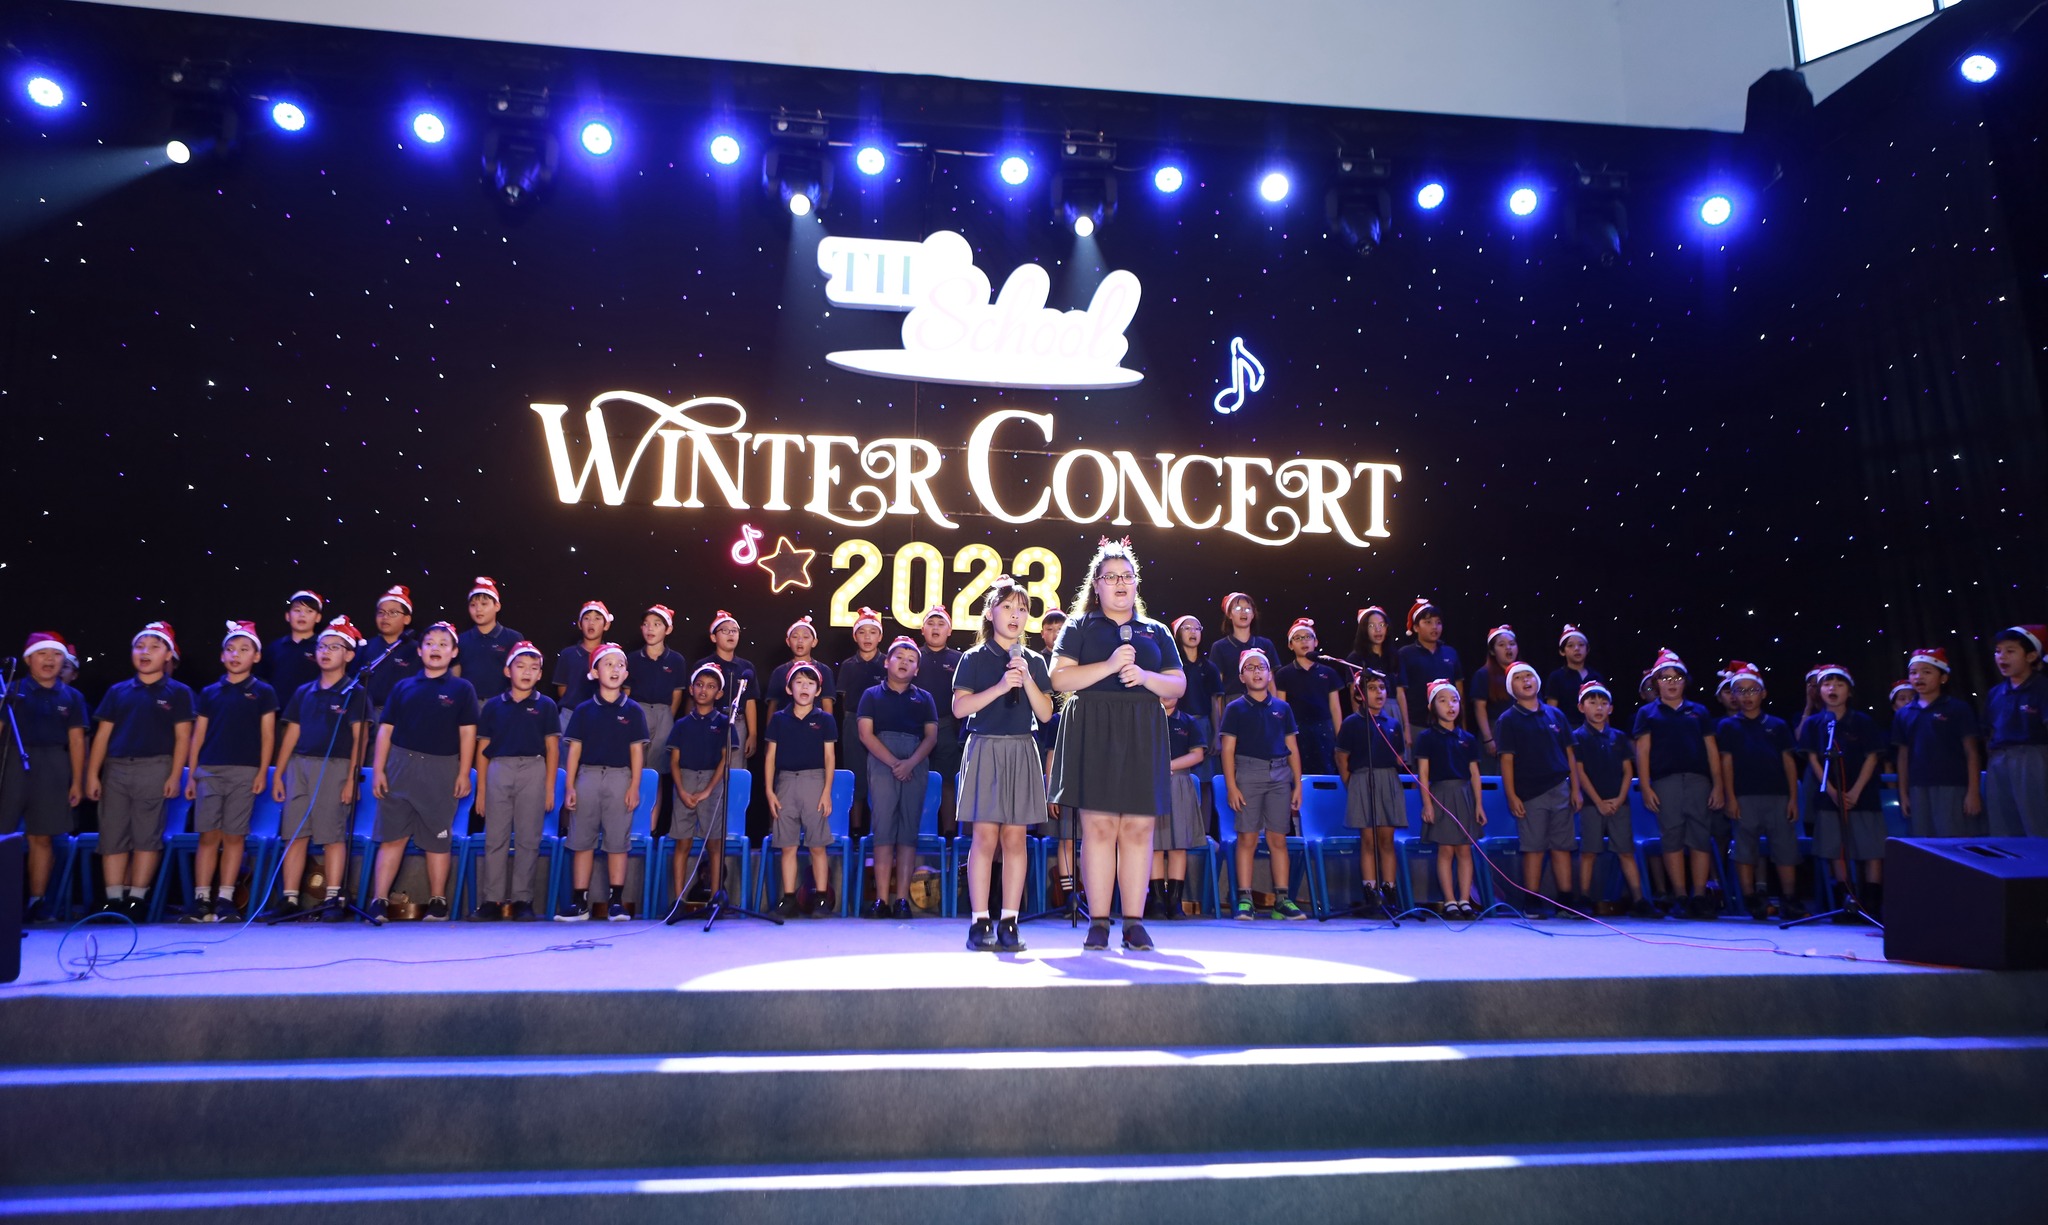 Bắt trọn những khoảnh khắc đáng yêu của THS-ers nhí trong Nhạc hội mùa đông